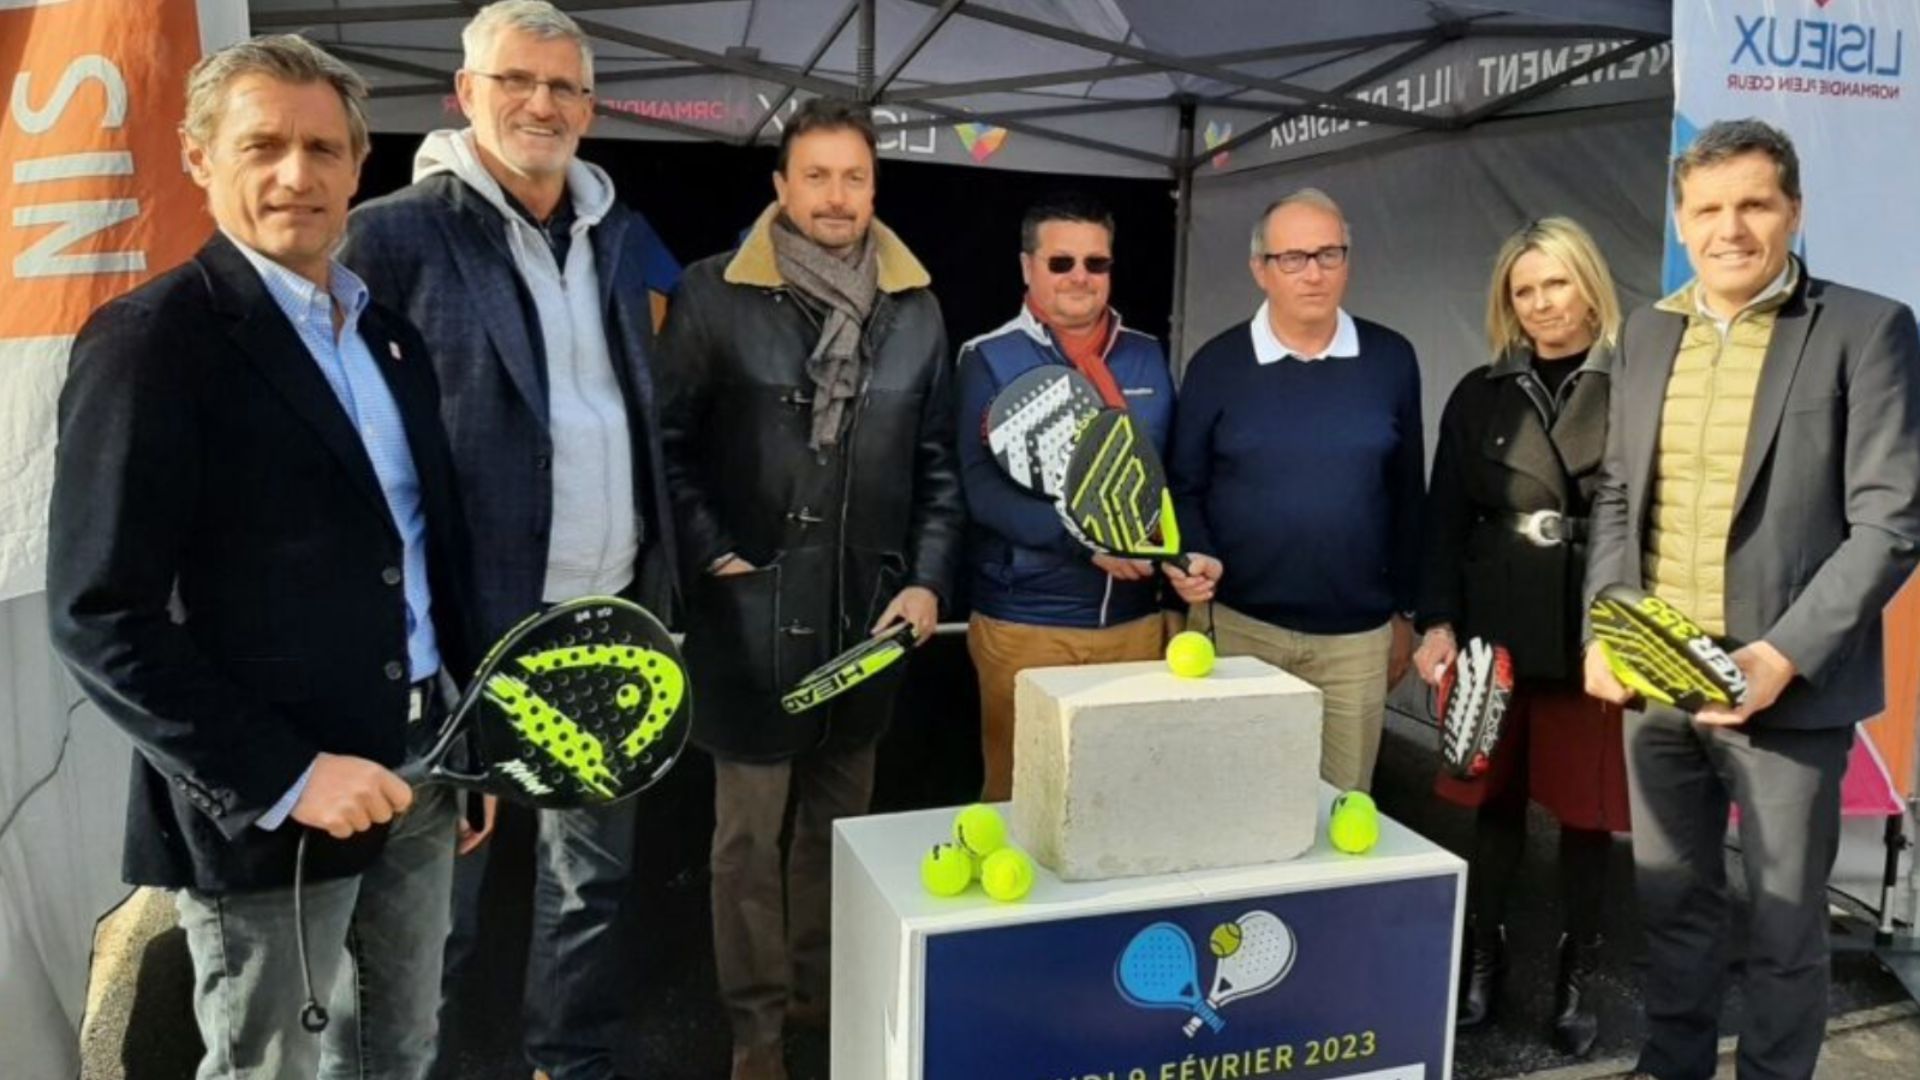 Normandie: Gilles Moretton und Henri Leconte unterstützen ein Projekt padel in Lisieux